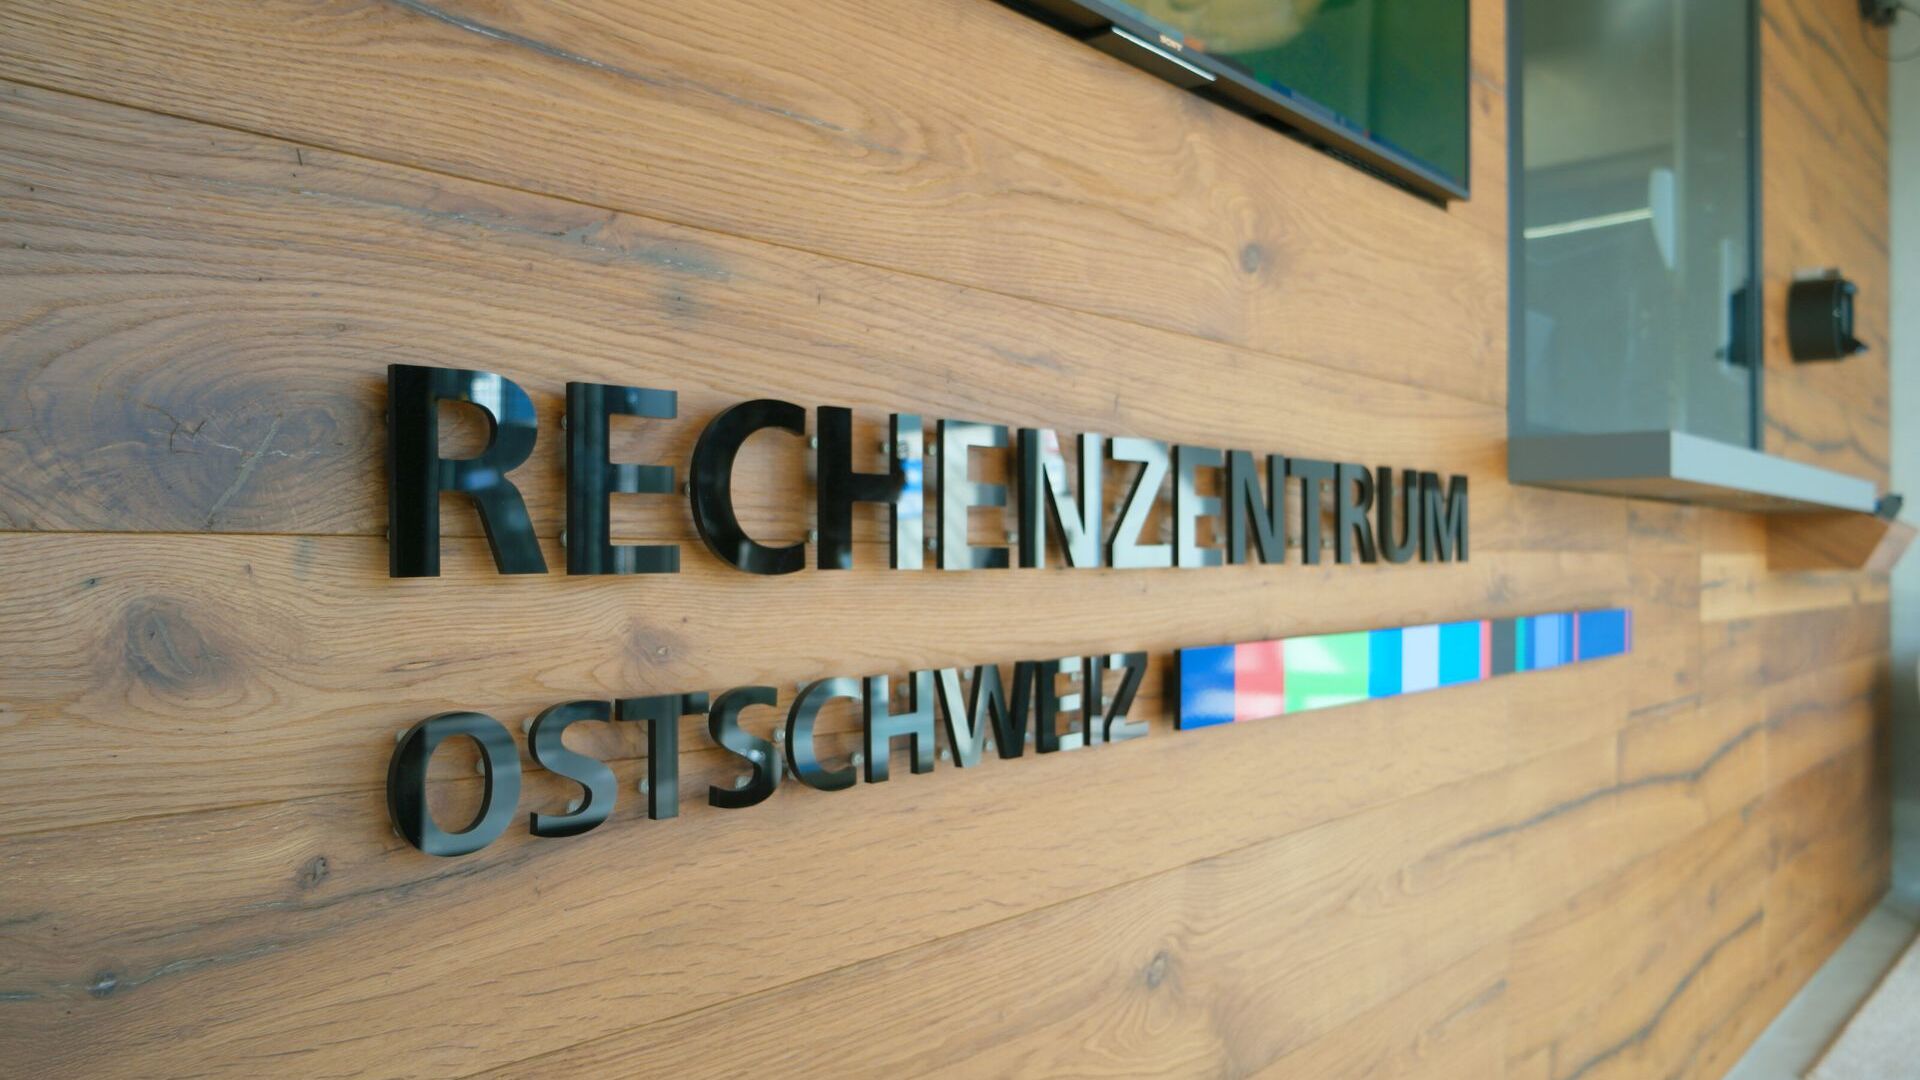 Η εσωτερική είσοδος και η πύλη του Rechenzentrum Ostschweiz στο Gais στο Appenzell Ausserrhoden